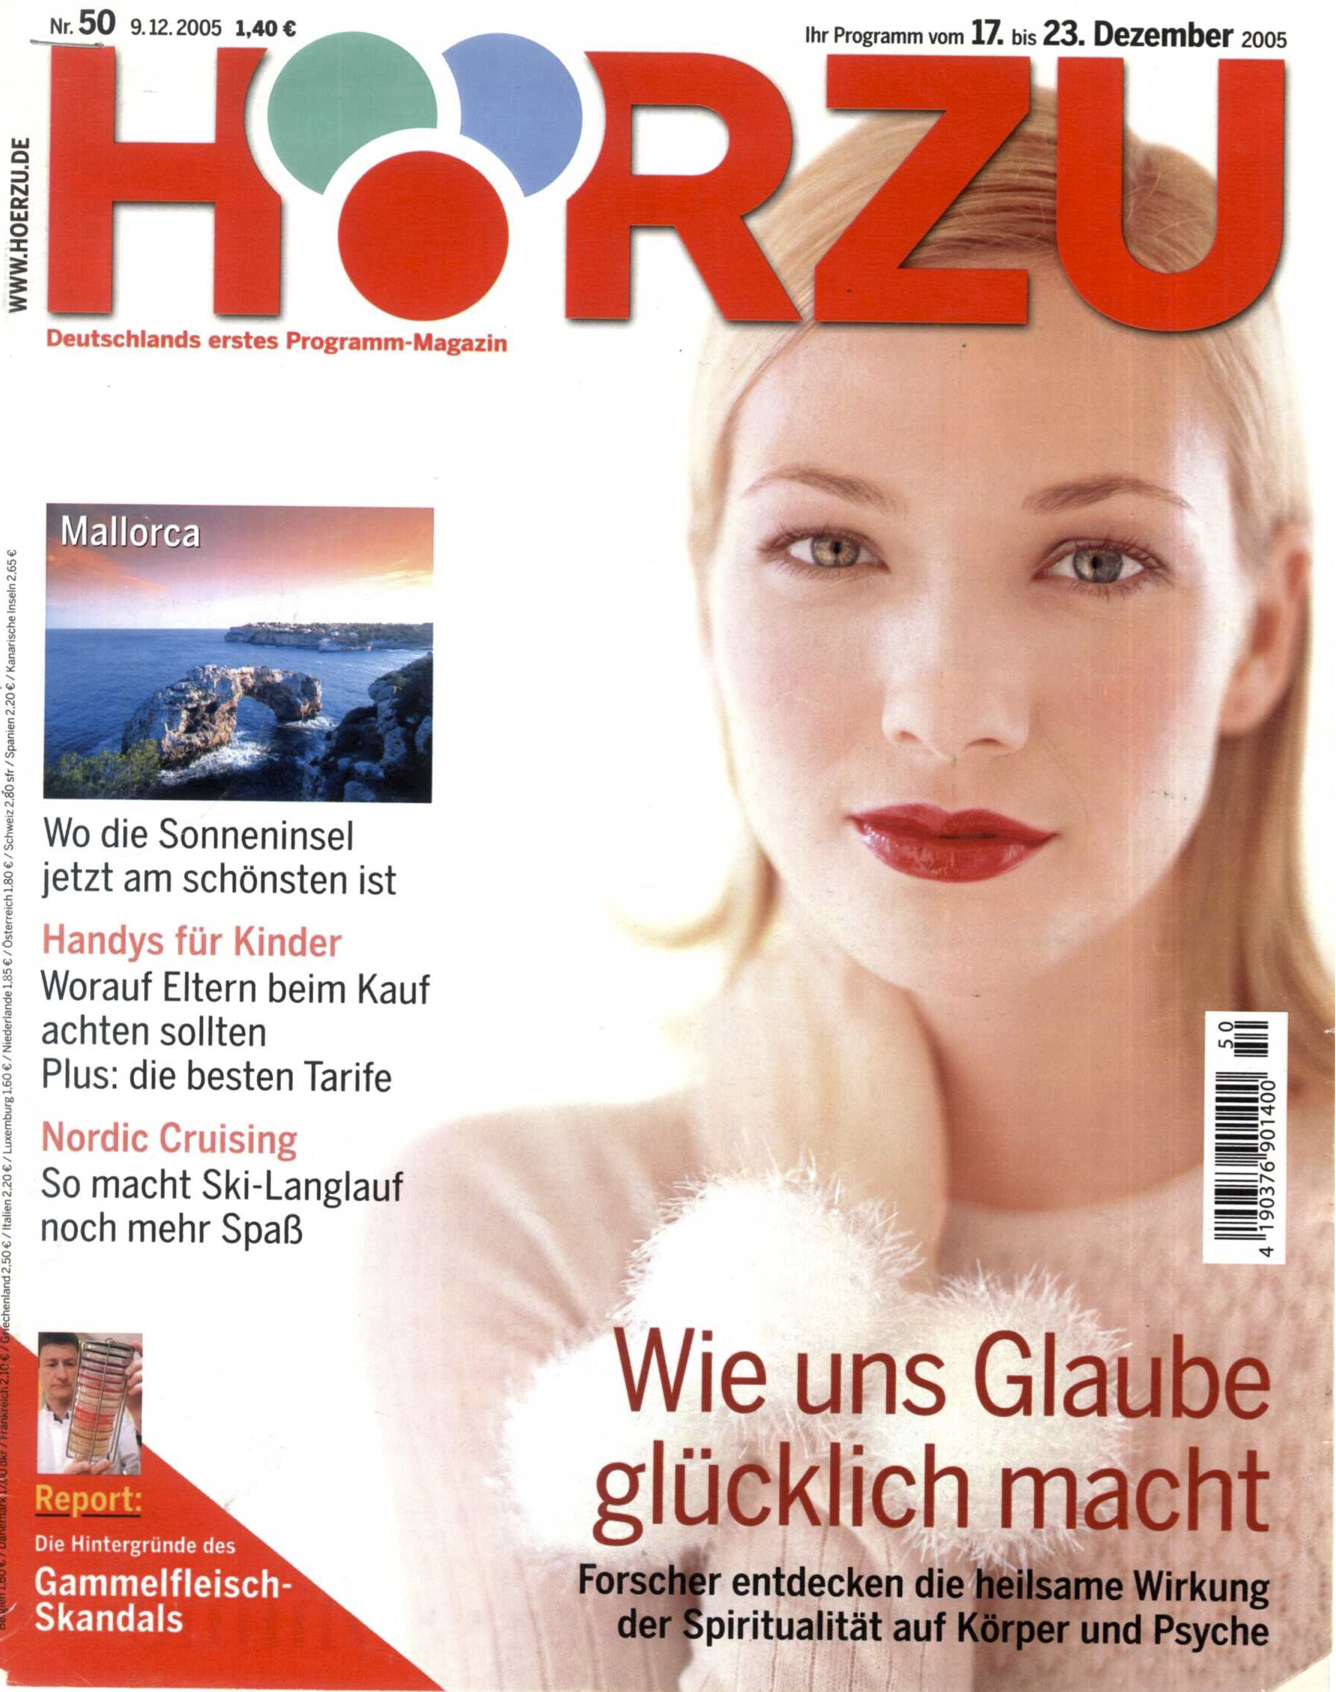 HZ_9.12.2005_Cover.jpg